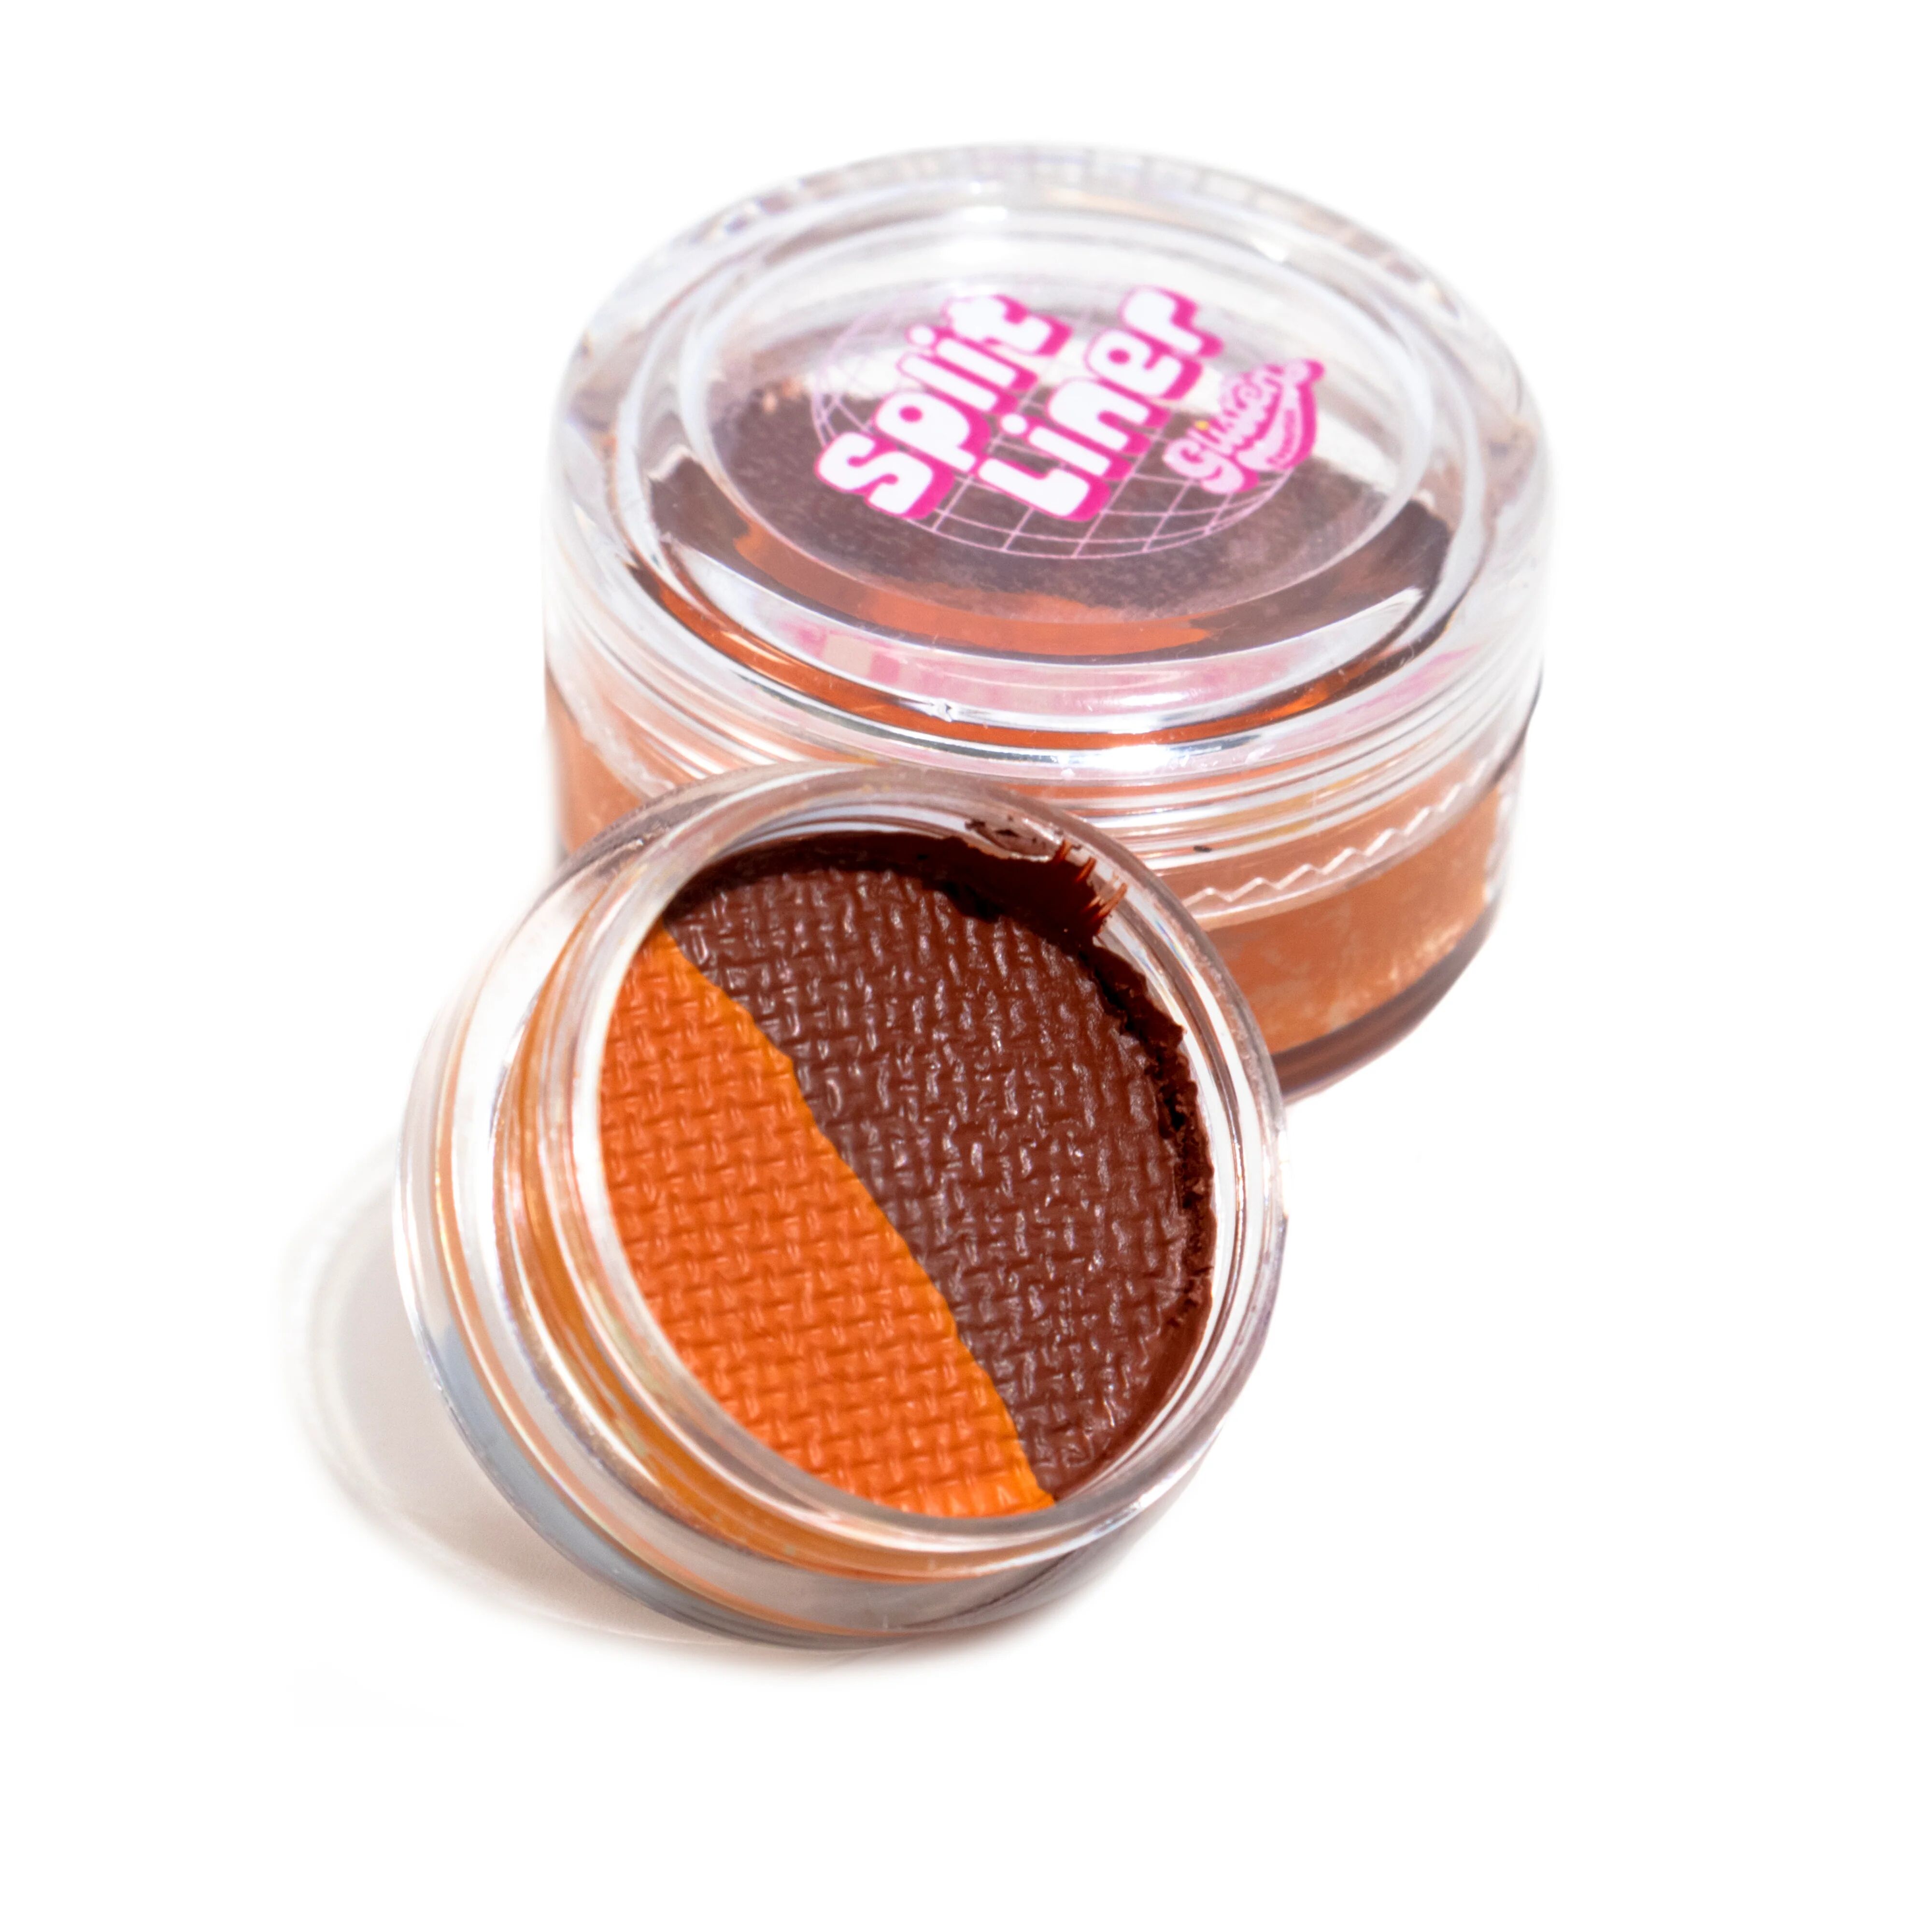 Tortoiseshell (Brown) Split Liner - Eyeliner - Glisten Cosmetics Small - 3g